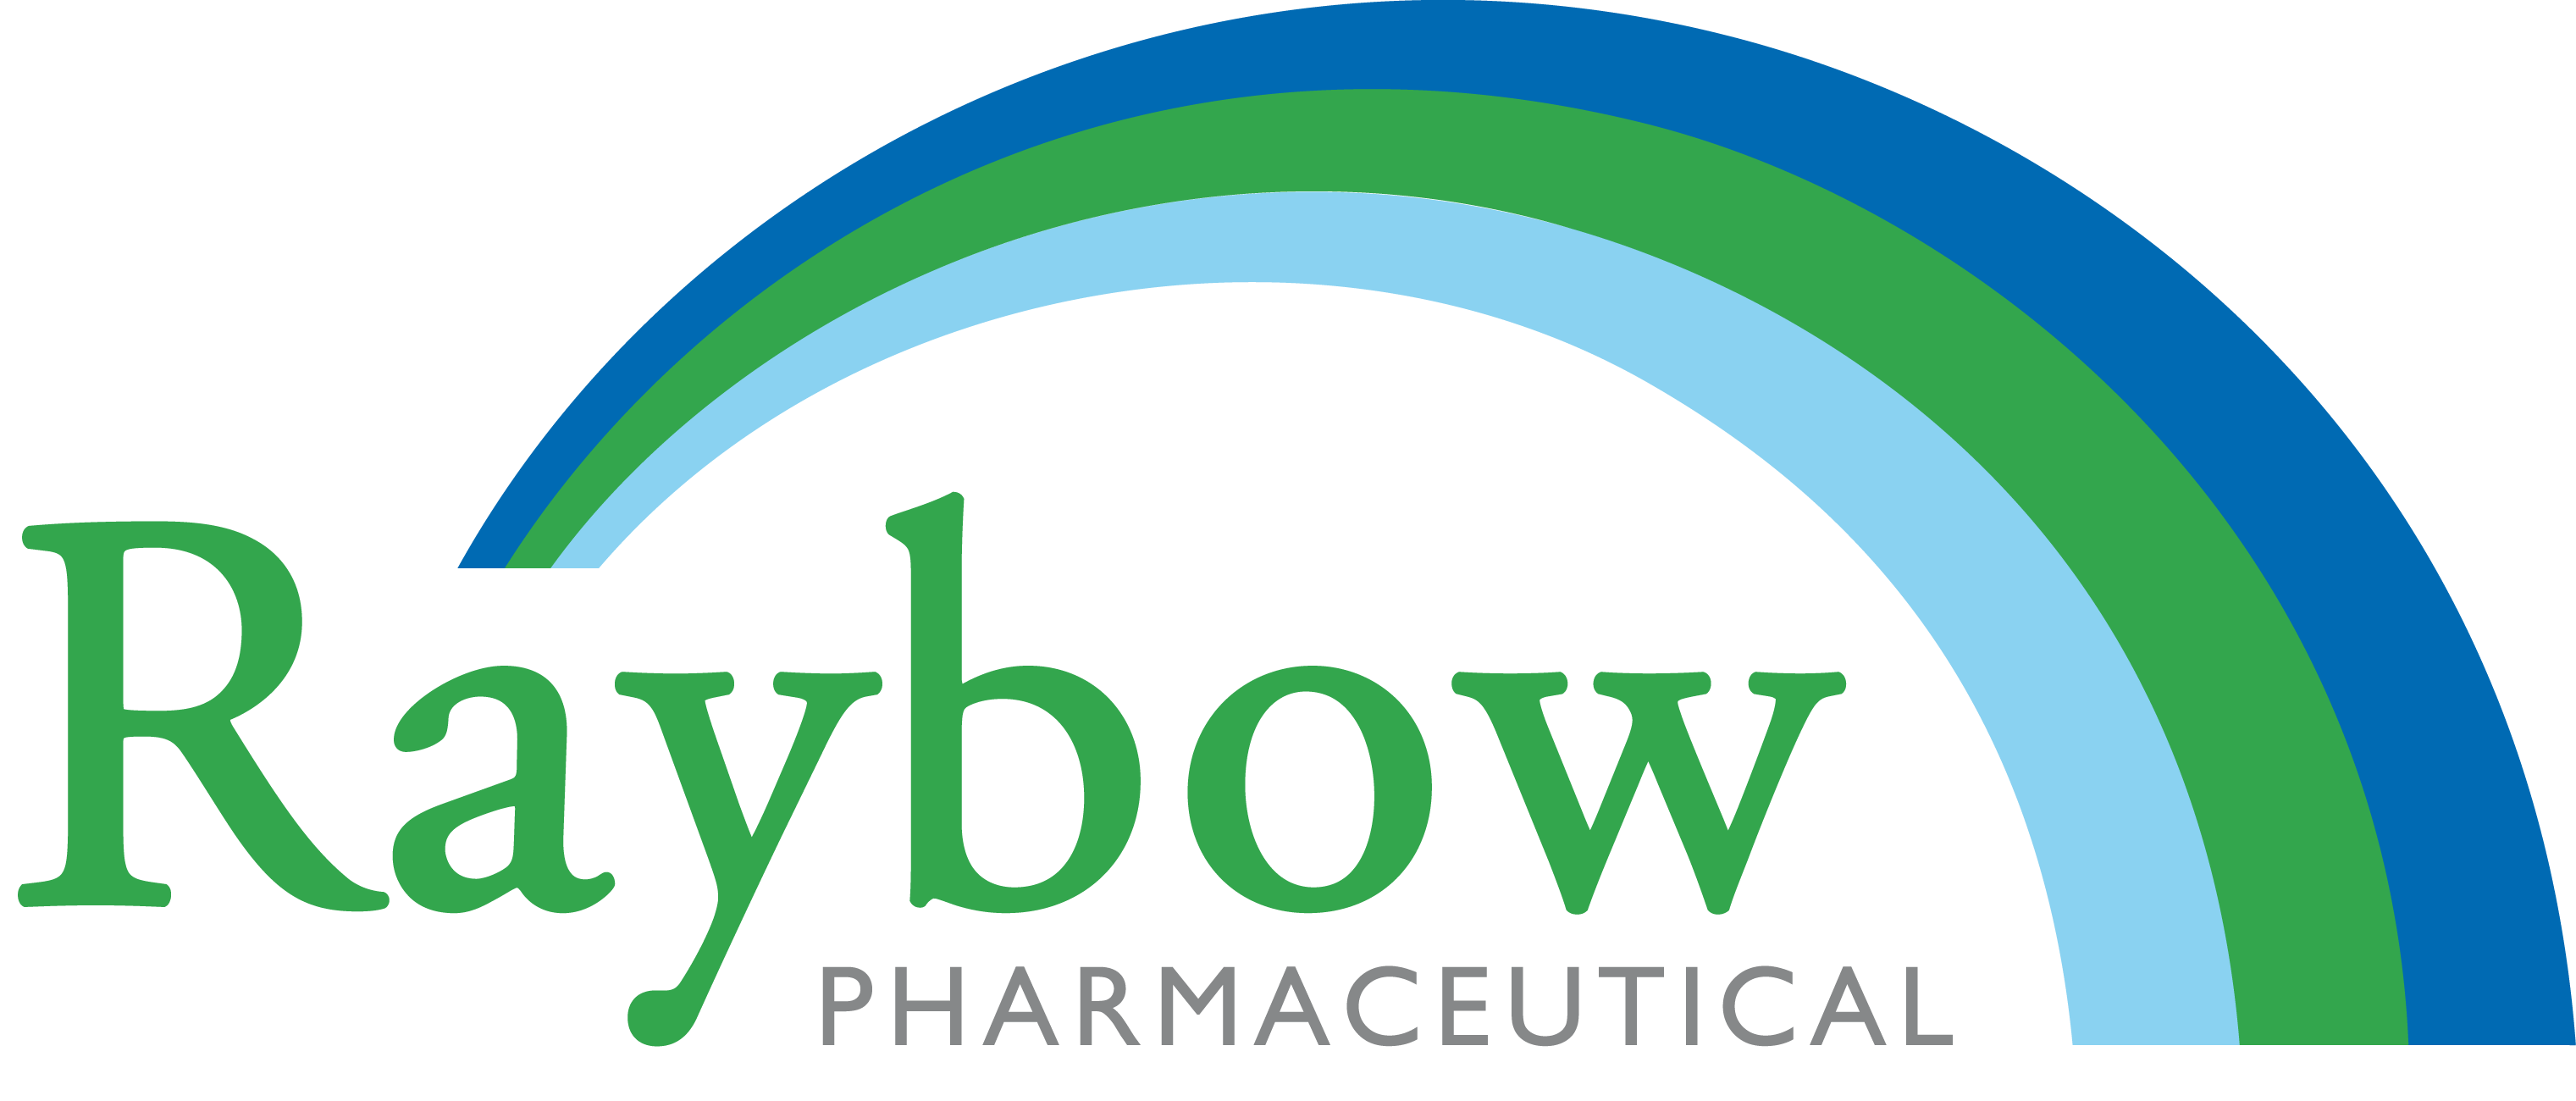 Raybow Pharmaceuticals logo